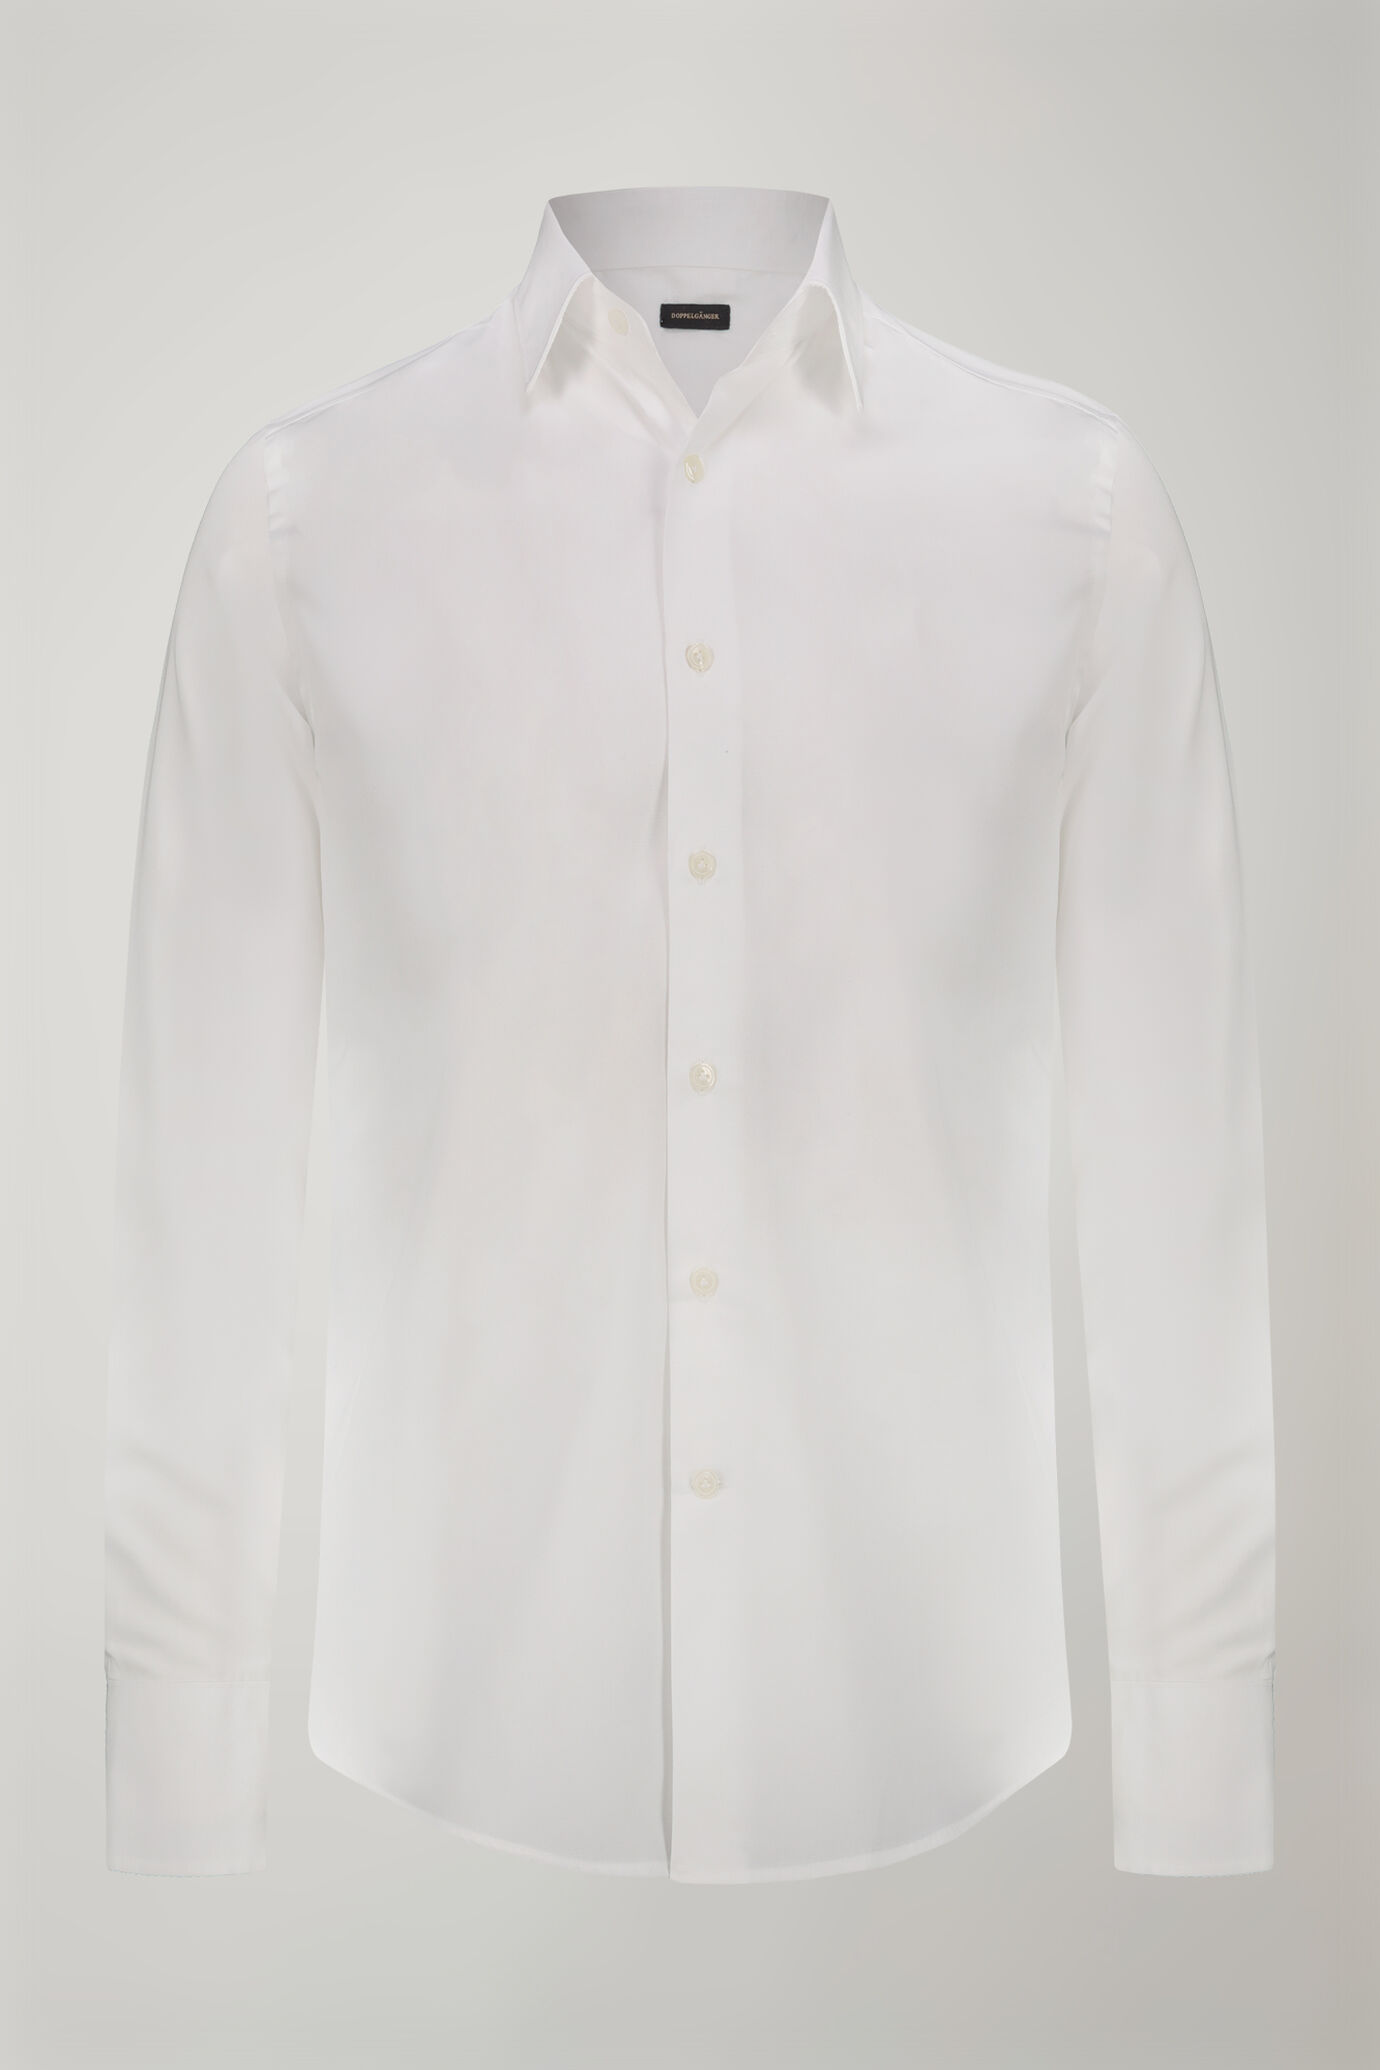 Camicia uomo collo classico 100% cotone tessuto fil-a-fil regular fit image number 4